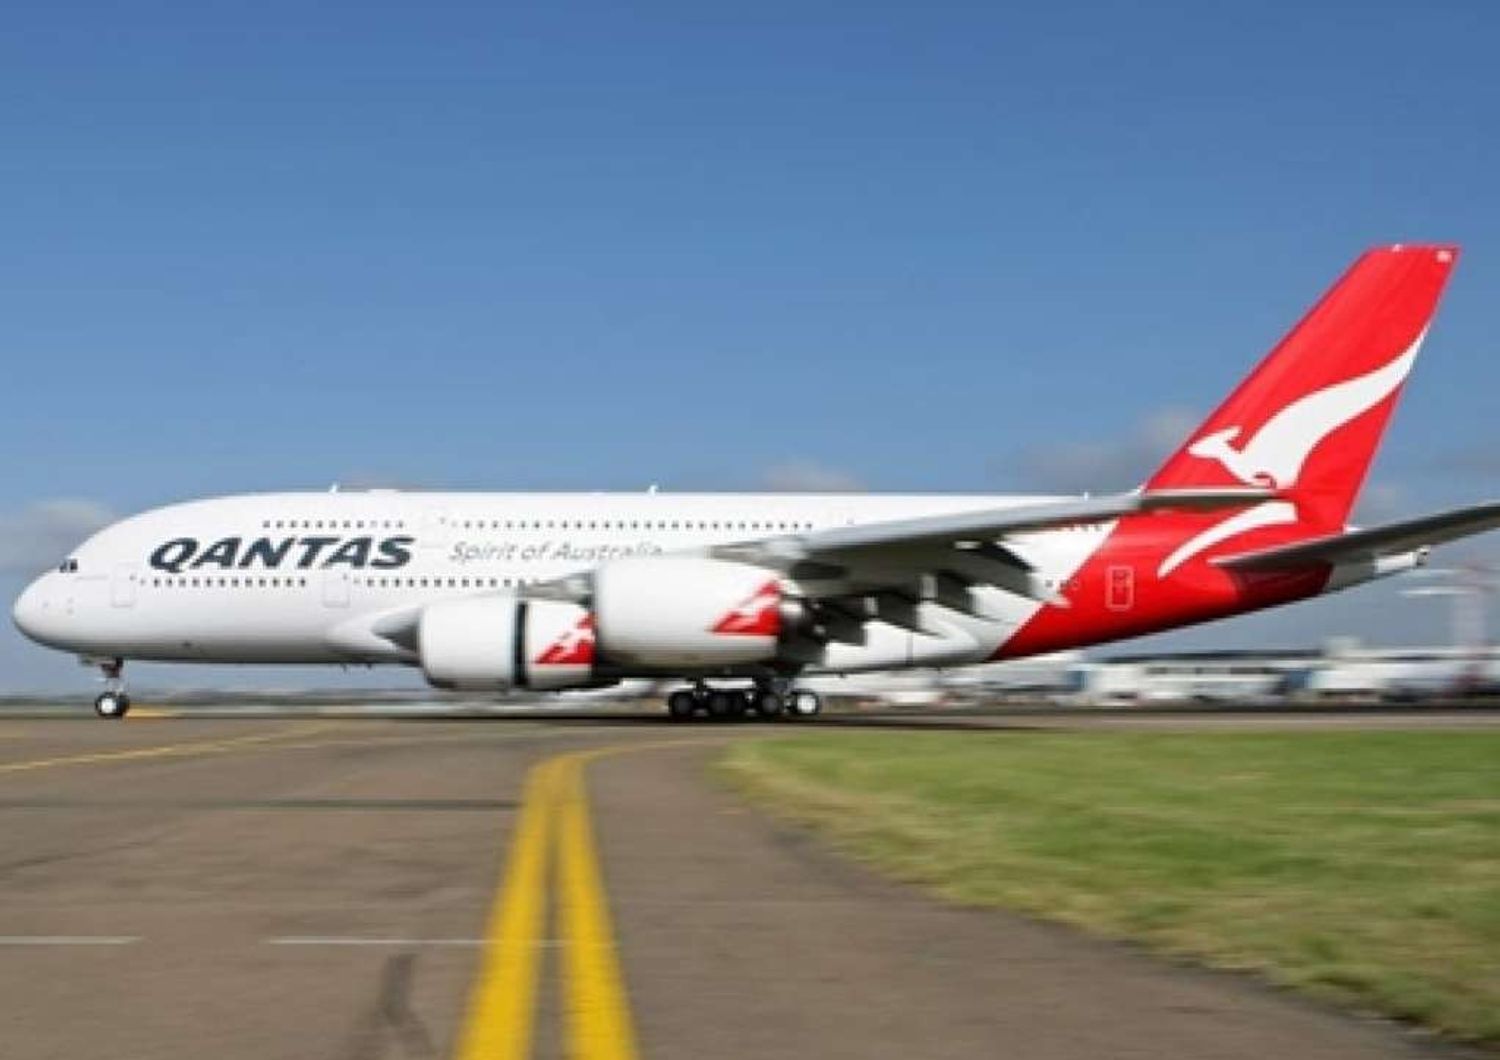 Tre voli Qantas costretti ad atterraggio in meno di 24 ore, due erano A380